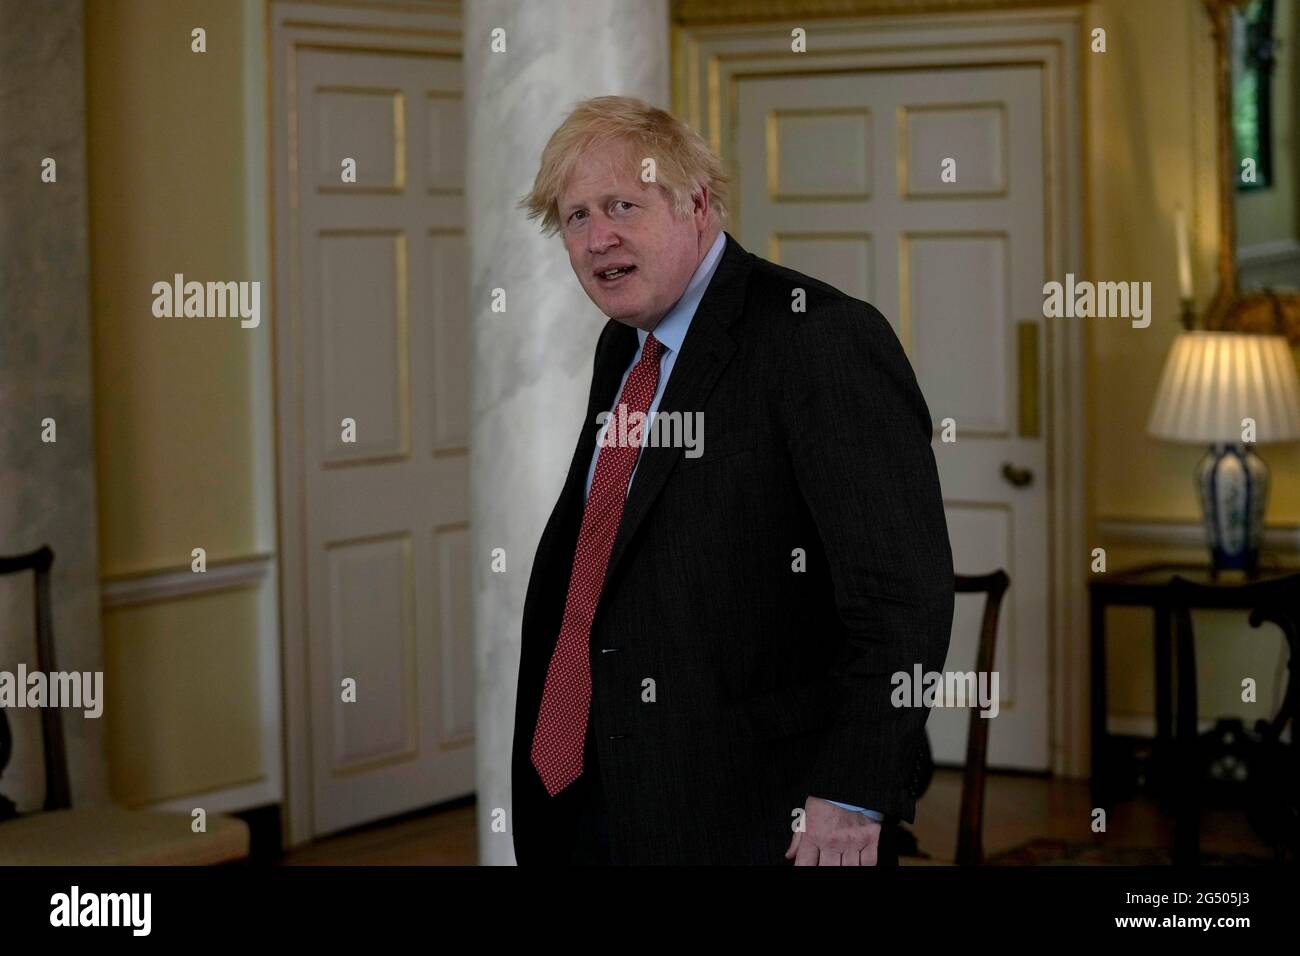 Il primo Ministro Boris Johnson arriva in vista di un incontro bilaterale con il primo Ministro della Libia, Abdul Hamid Dbeibah, all'interno di 10 Downing Street, Londra. Data immagine: Giovedì 24 giugno 2021. Foto Stock